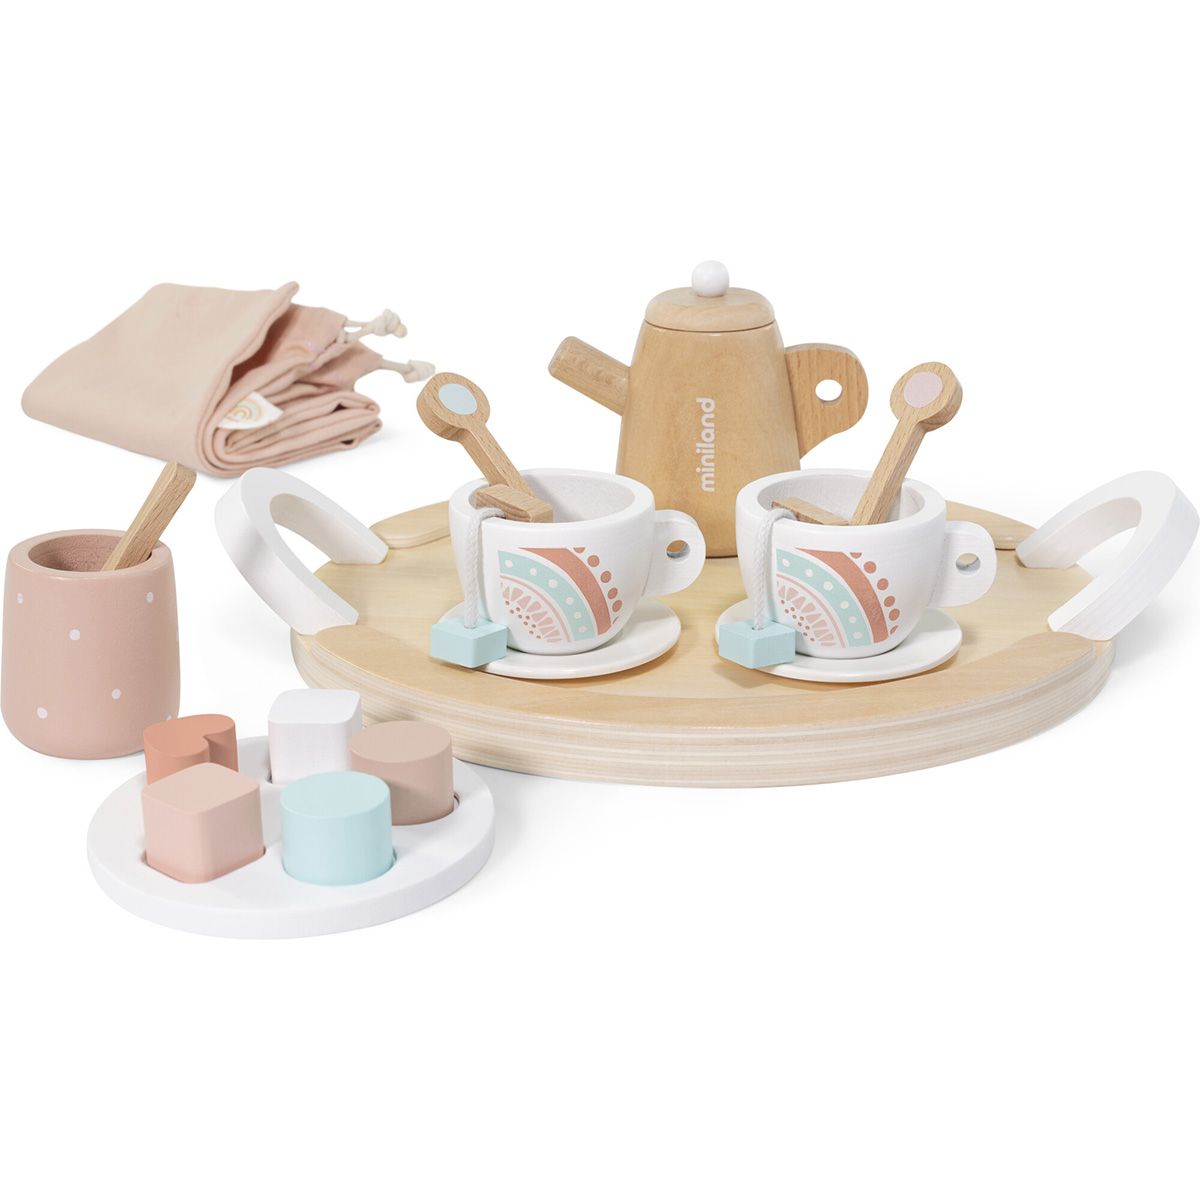 Miniland Doll Wooden Tea Set | The Tot